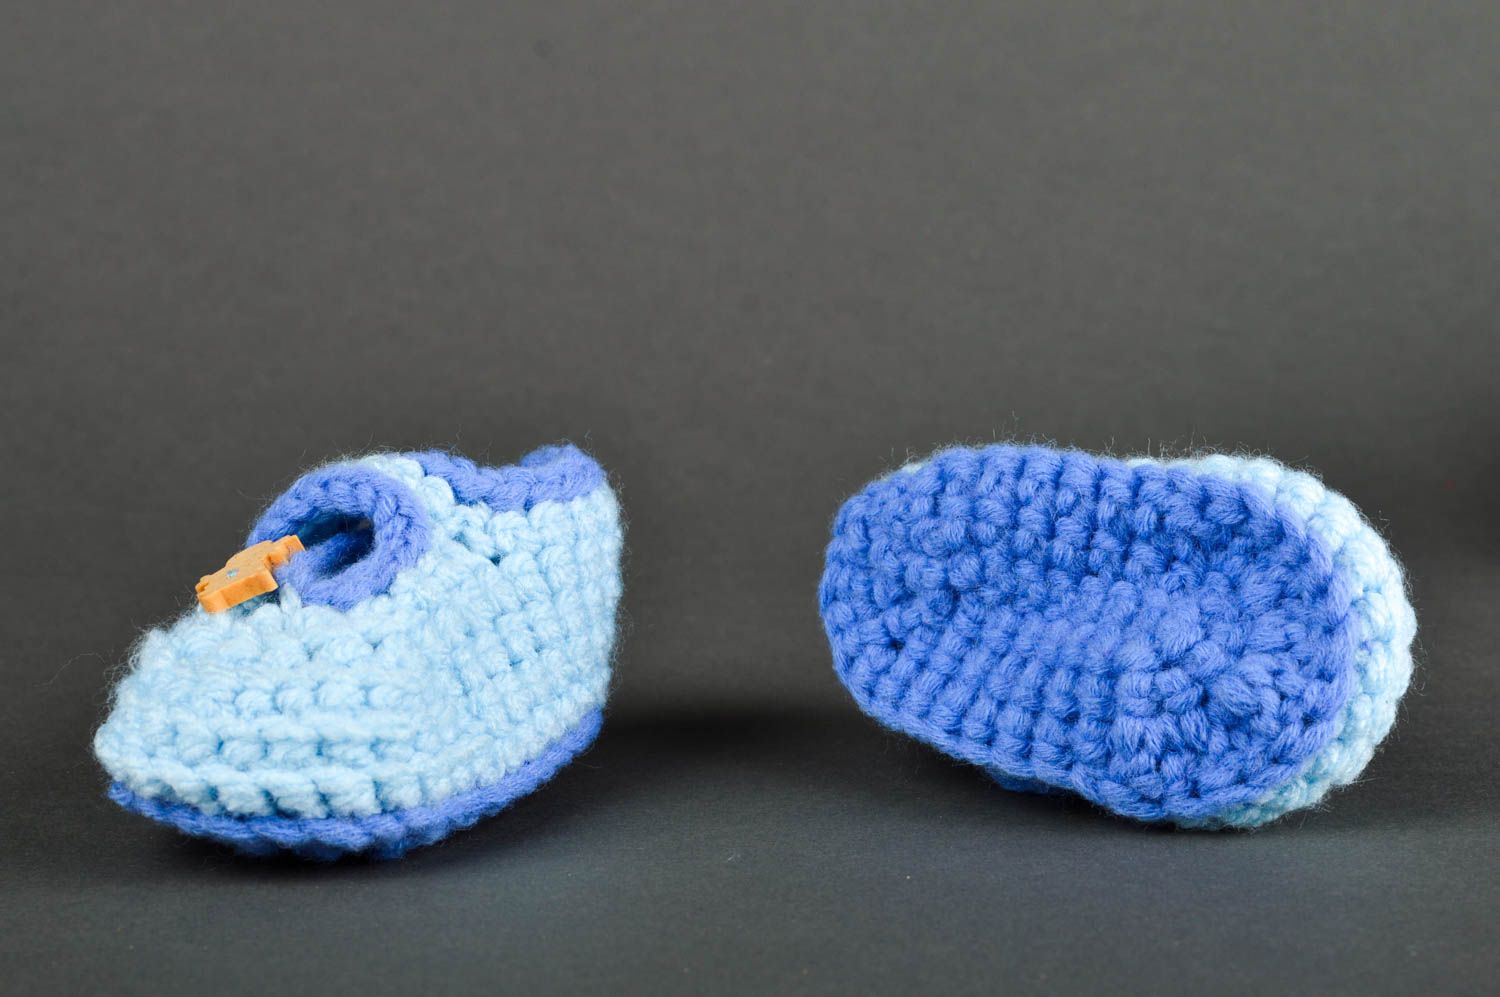 Пинетки крючком хэнд мэйд пинетки для новорожденных голубые вязаные пинетки фото 2